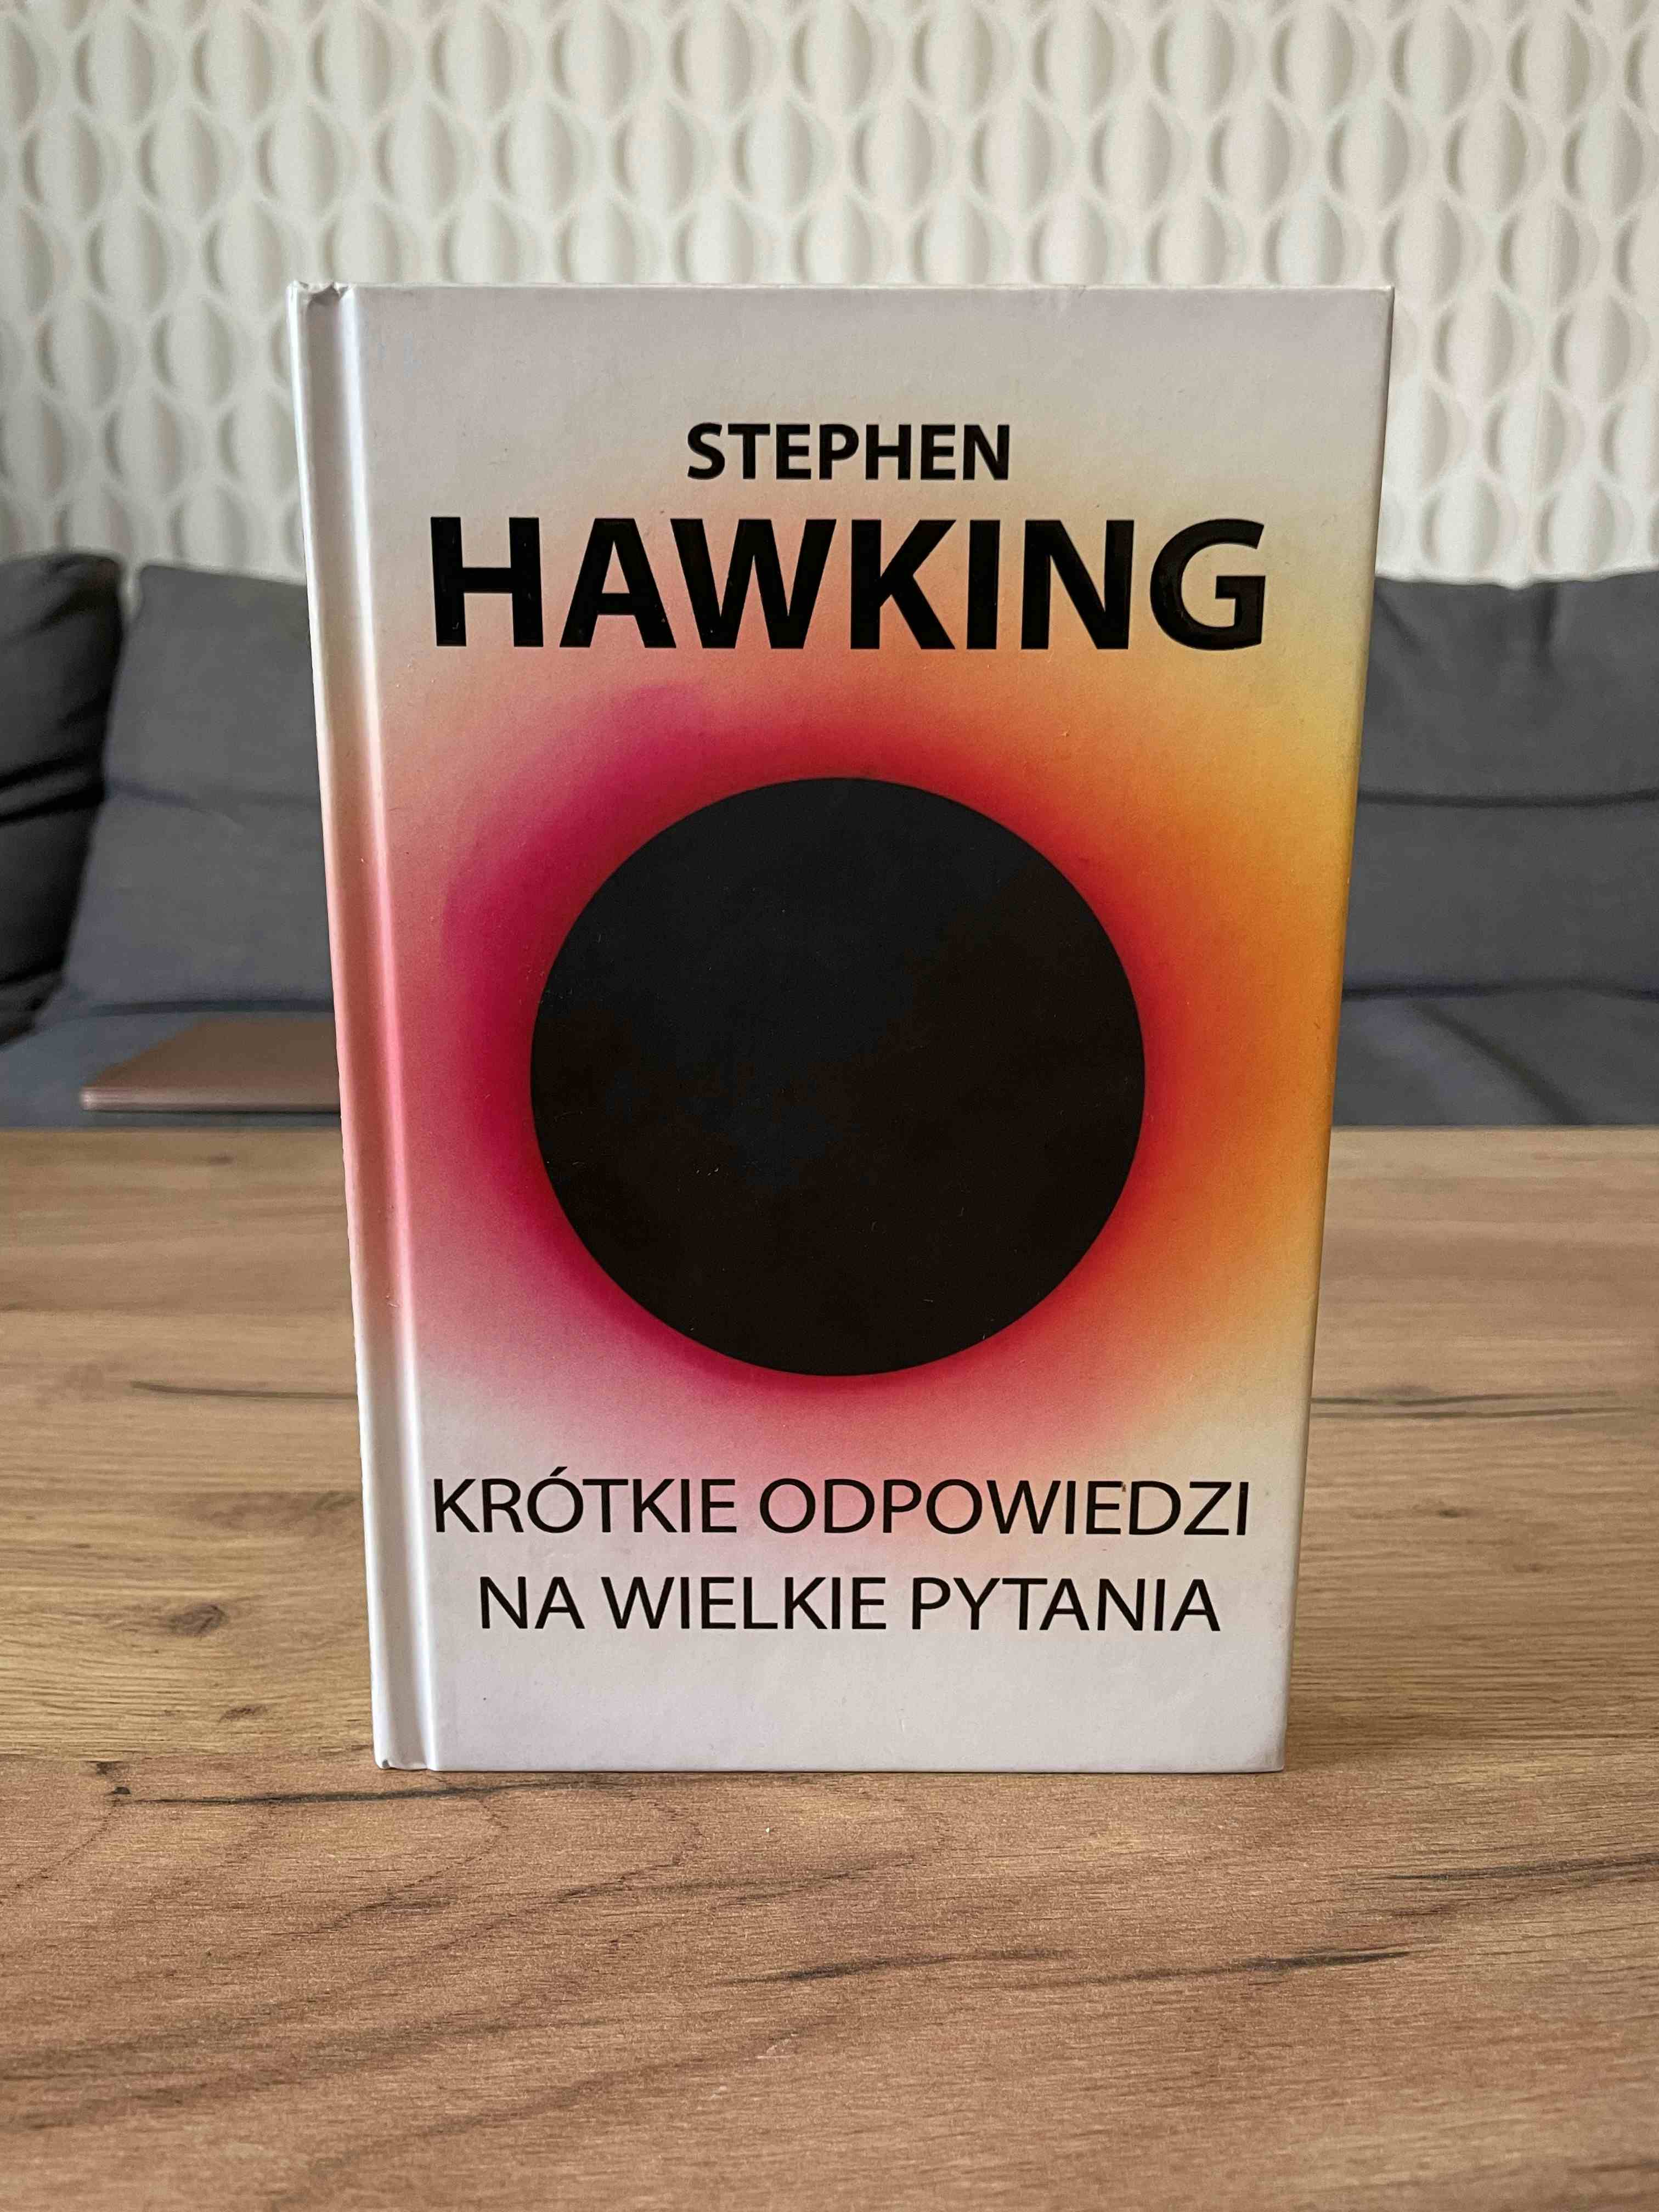 Primary picture of Książka "Krótkie odpowiedzi na wielkie pytania". Autor: Stephen Hawking